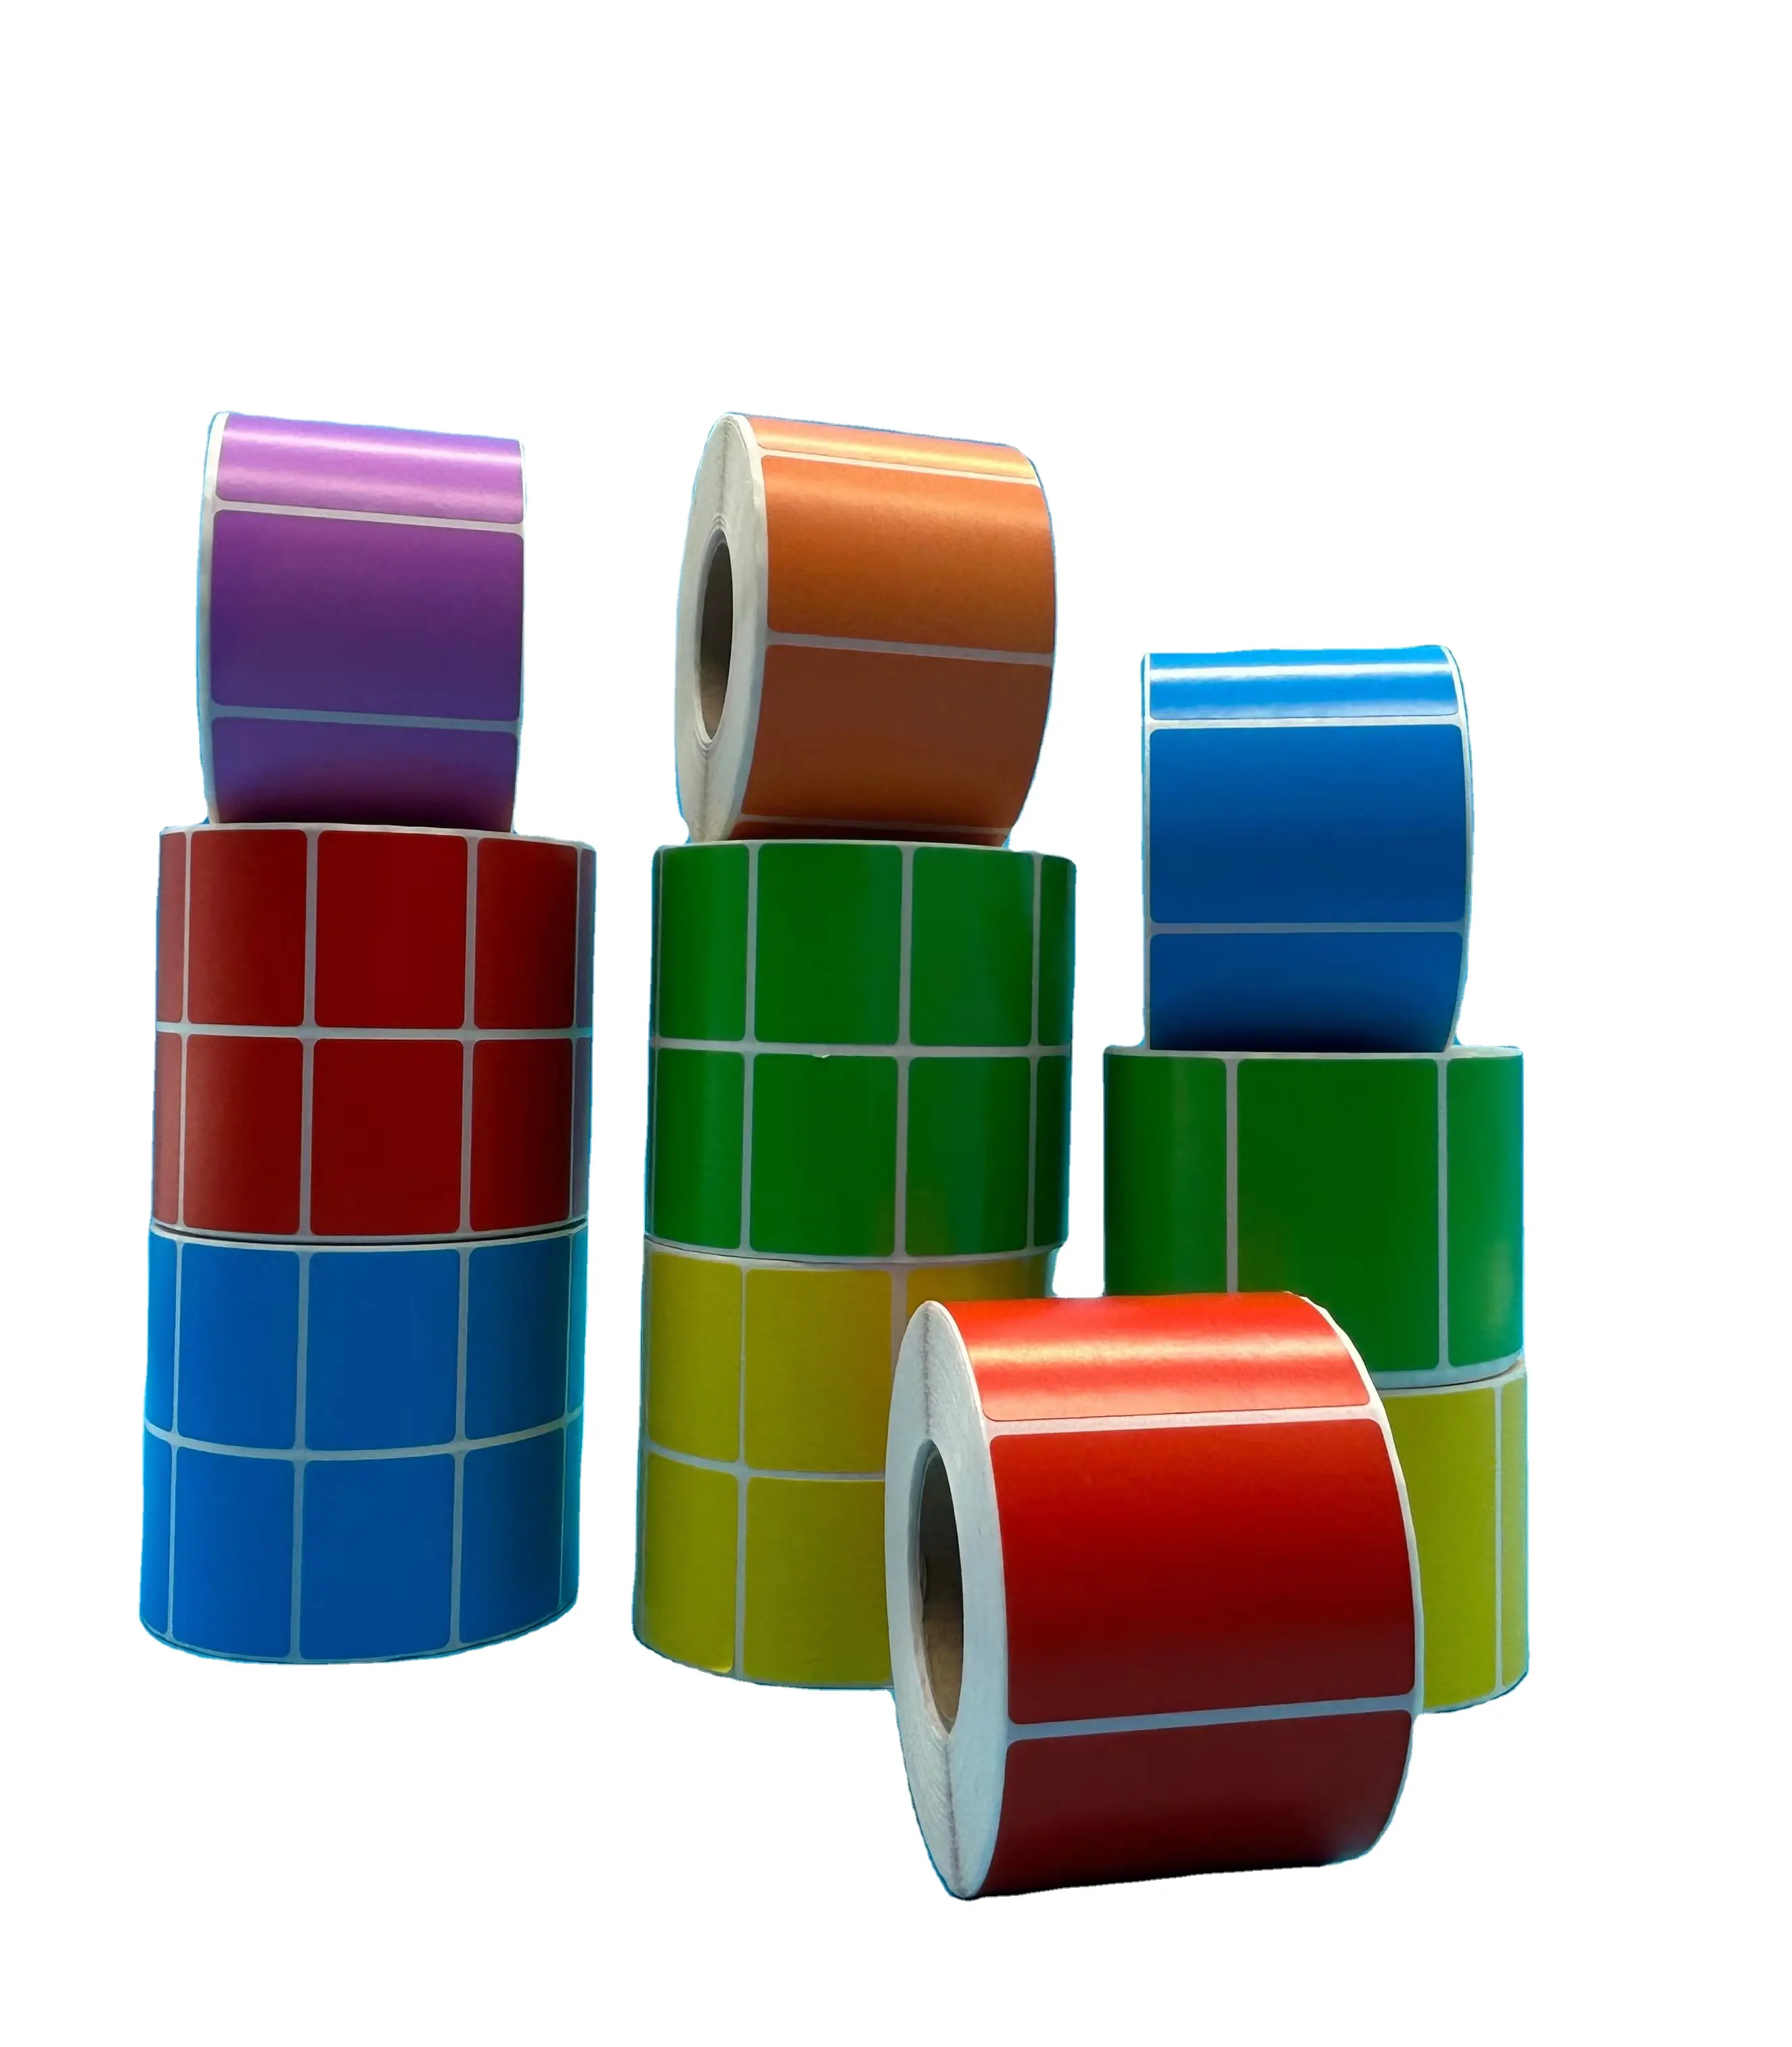 Kertas termal warna kode batang kustom kualitas tinggi ukuran 60mm * 40mm 1000 buah gulungan kertas termal Label ongkos kirim warna